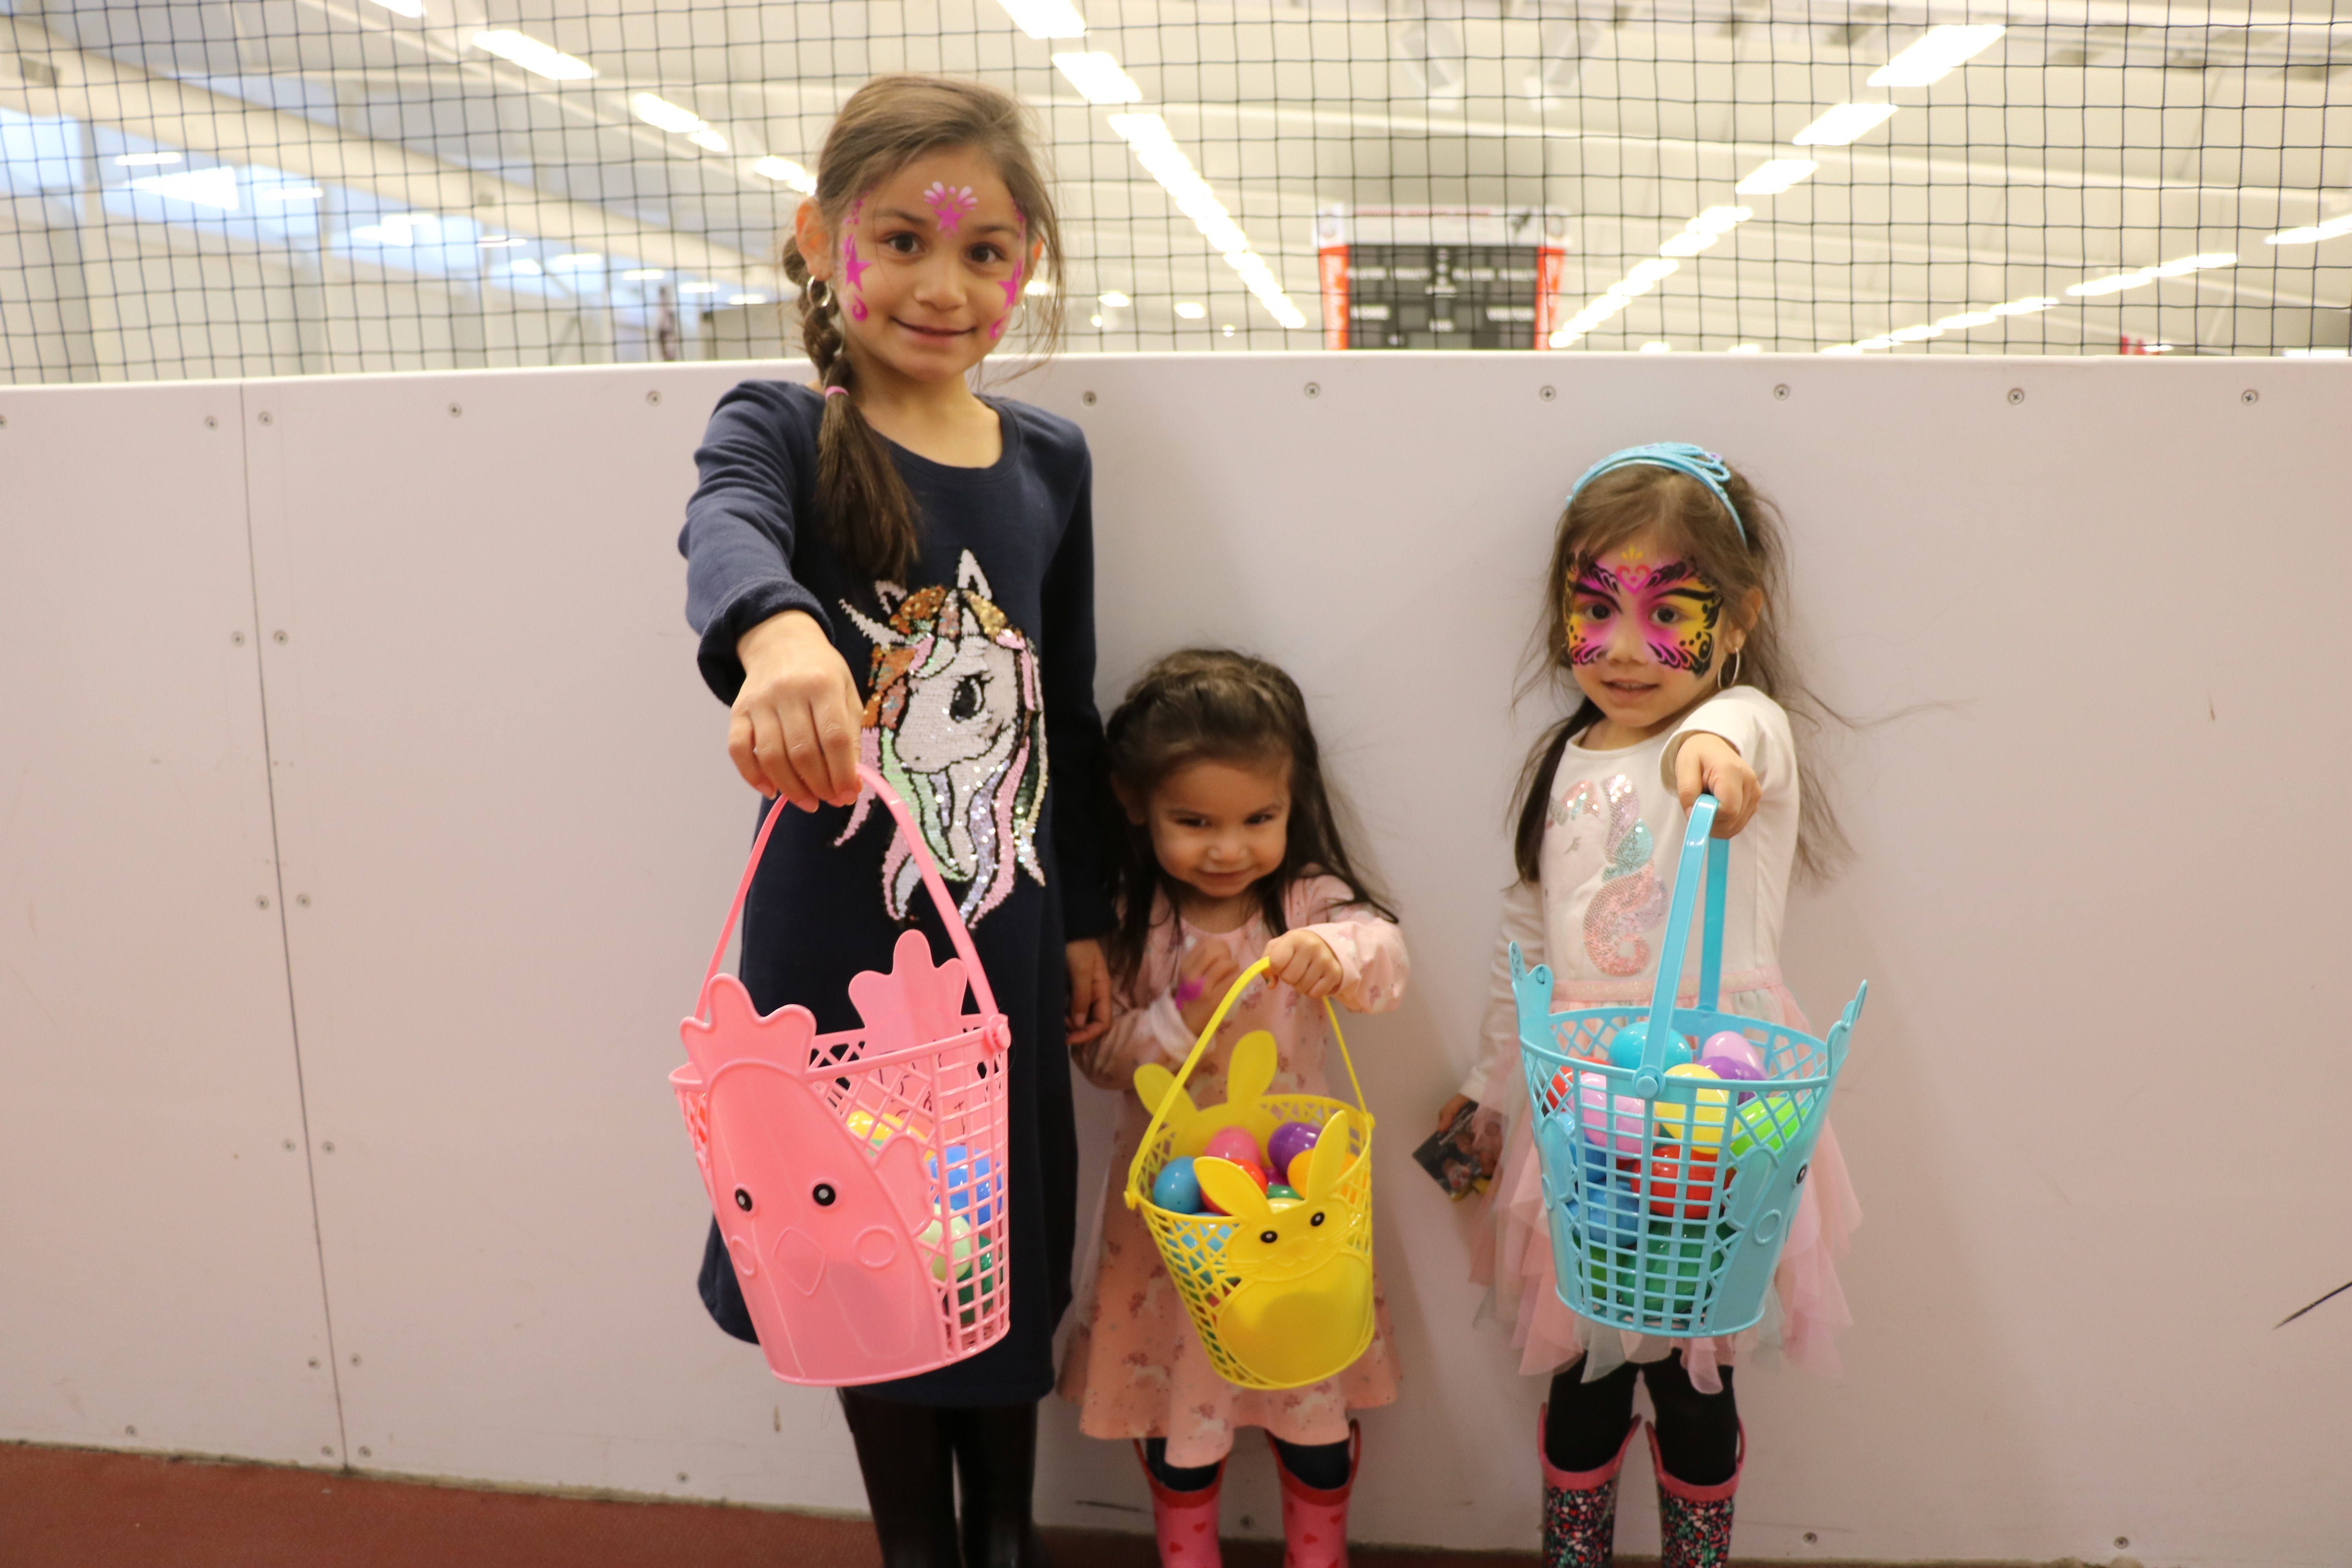 Girls holding Easter egg baskets